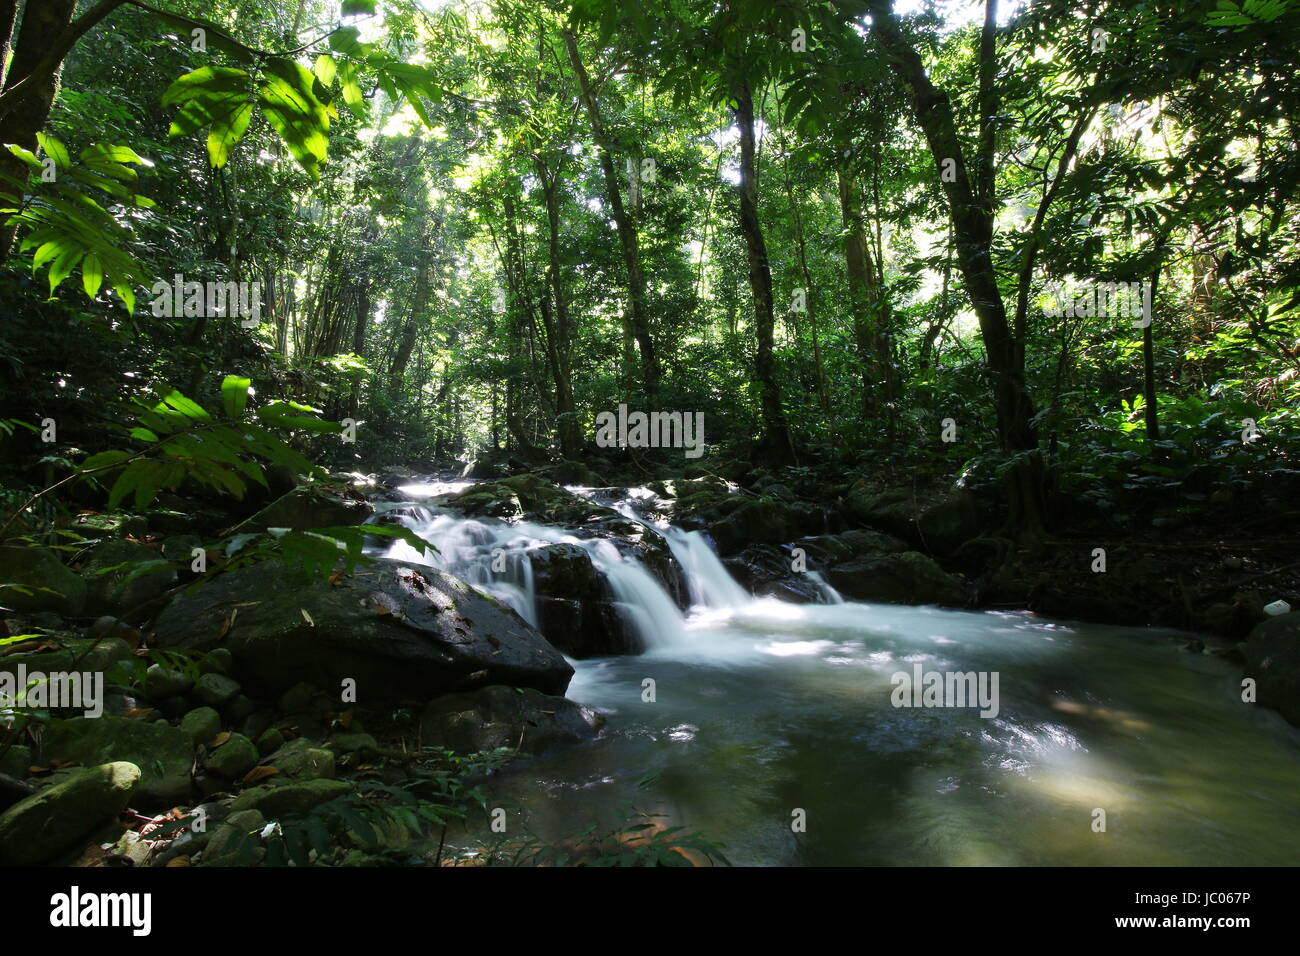 Fiume circondato da alberi e rocce in una giungla tropicale prese a rallentare la velocità dello shutter. Foto Stock